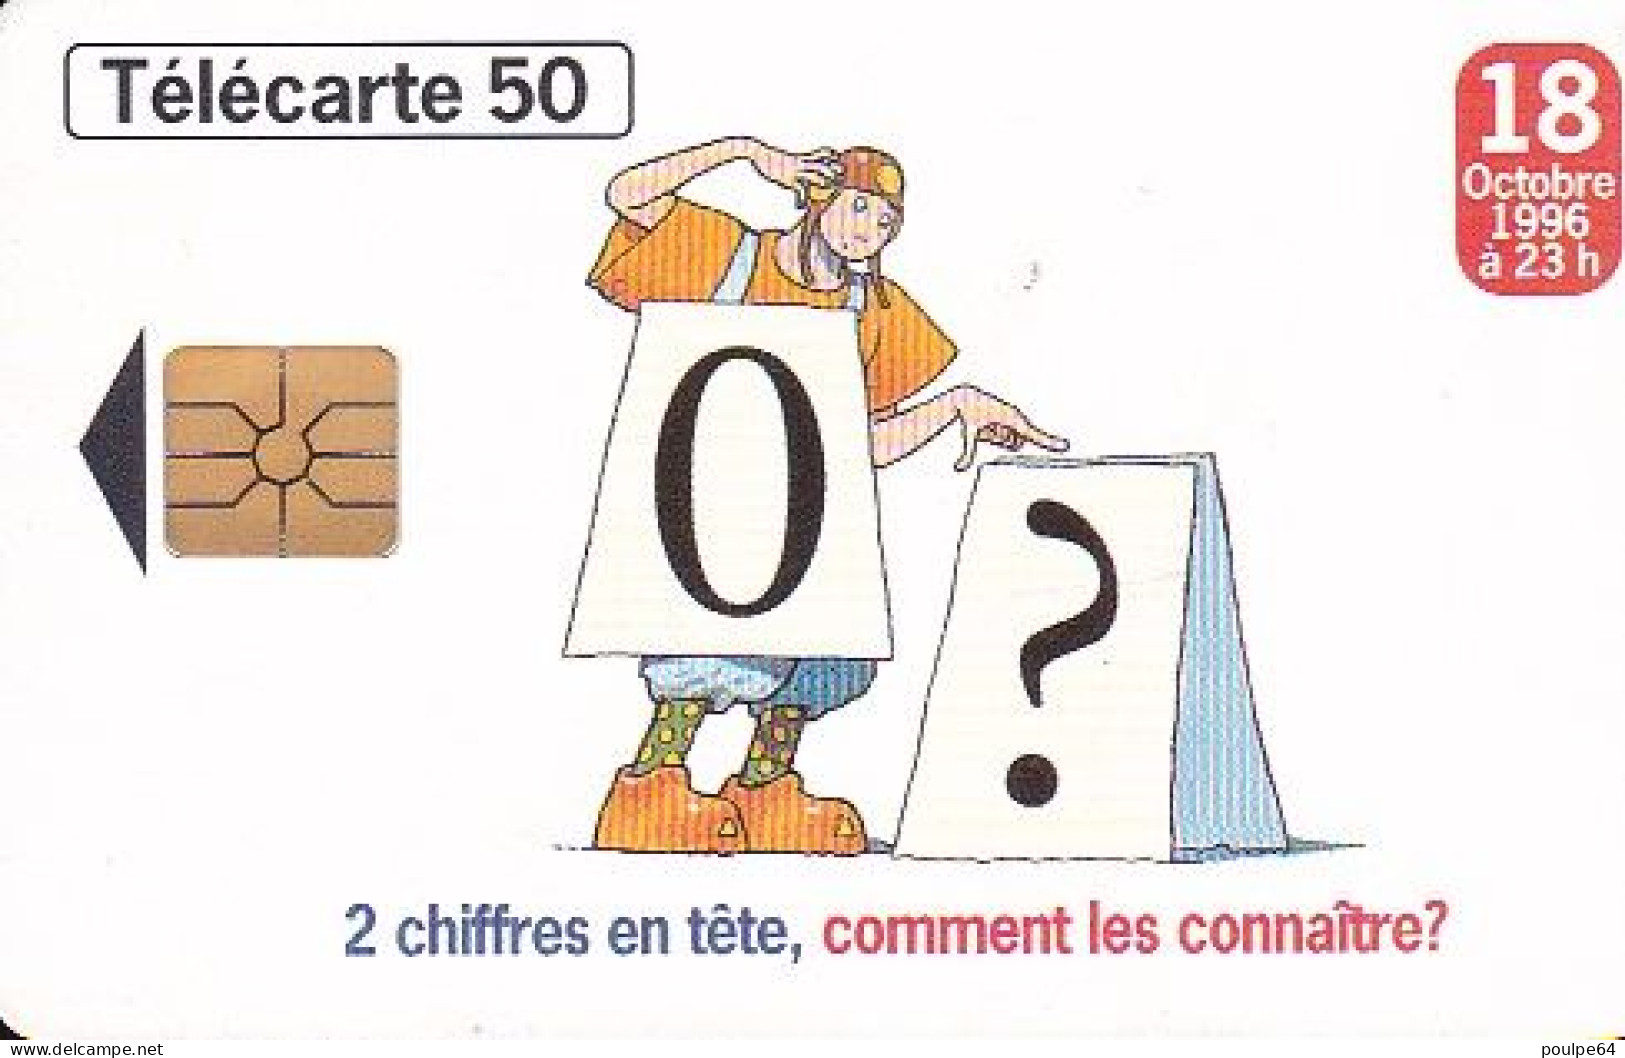 F684 08/1996 - MÉMORISATION À 10 CHIFFRES - 50 GEM - 1996